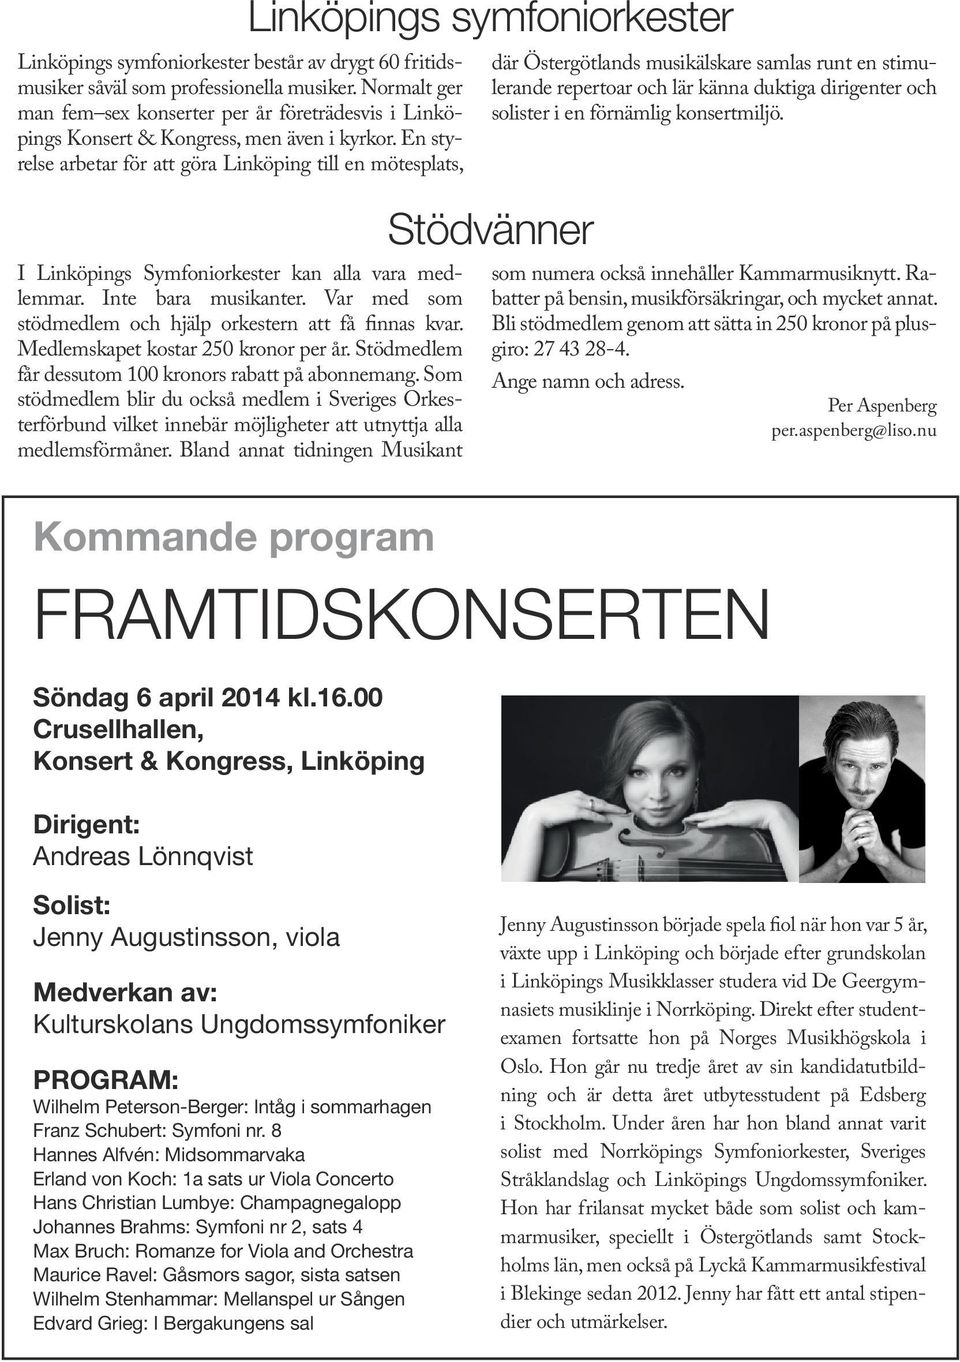 En styrelse arbetar för att göra Linköping till en mötesplats, där Östergötlands musikälskare samlas runt en stimulerande repertoar och lär känna duktiga dirigenter och solister i en förnämlig